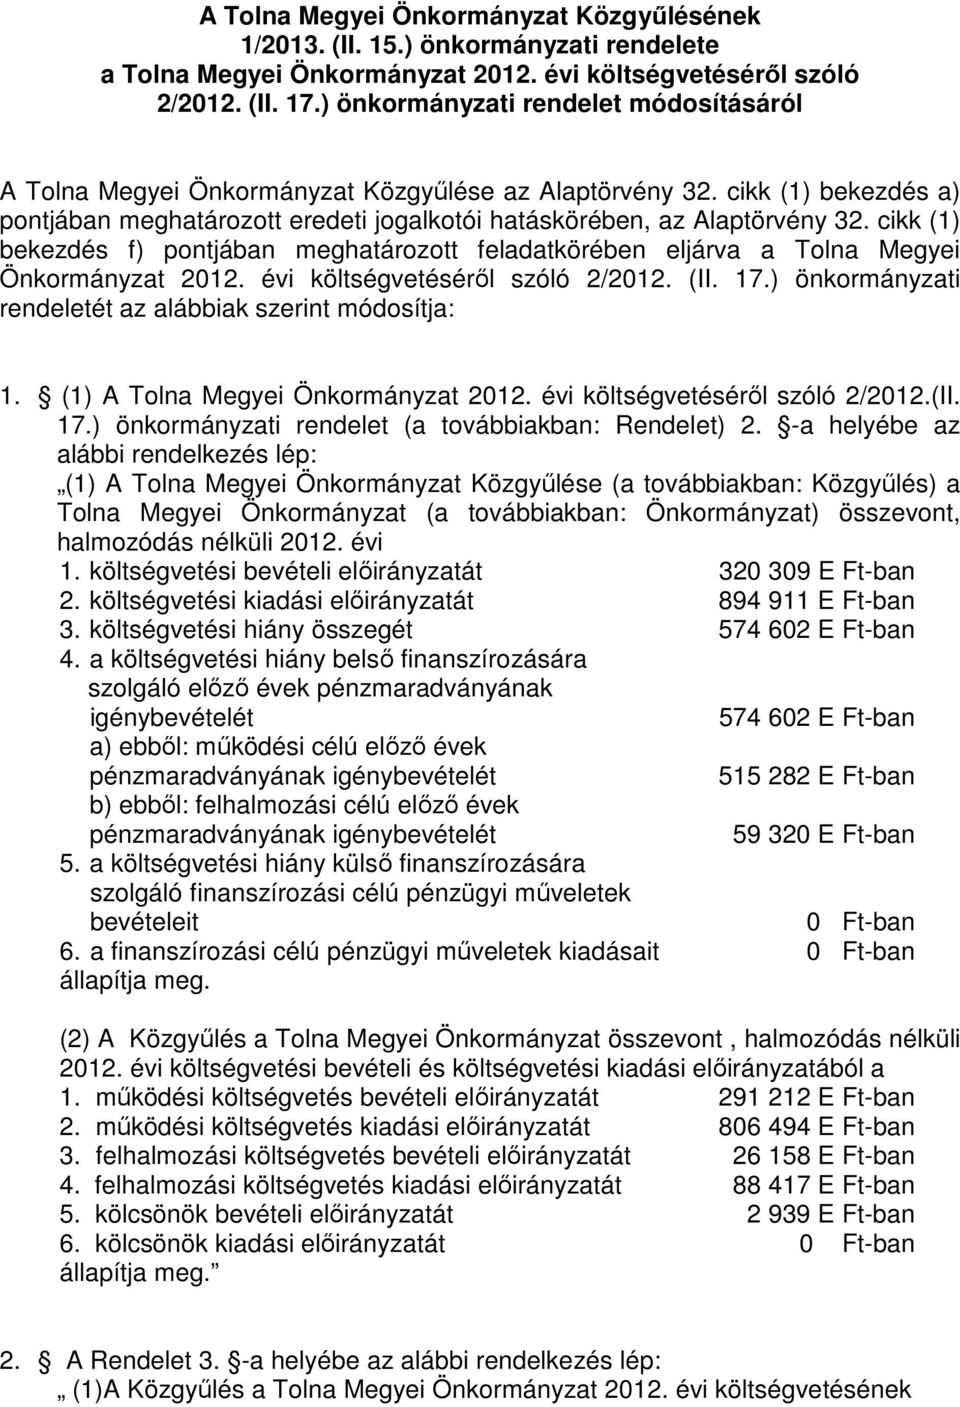 cikk (1) bekezdés f) pontjában meghatározott feladatkörében eljárva a Tolna Megyei Önkormányzat 2012. évi költségvetéséről szóló 2/2012. (II. 17.